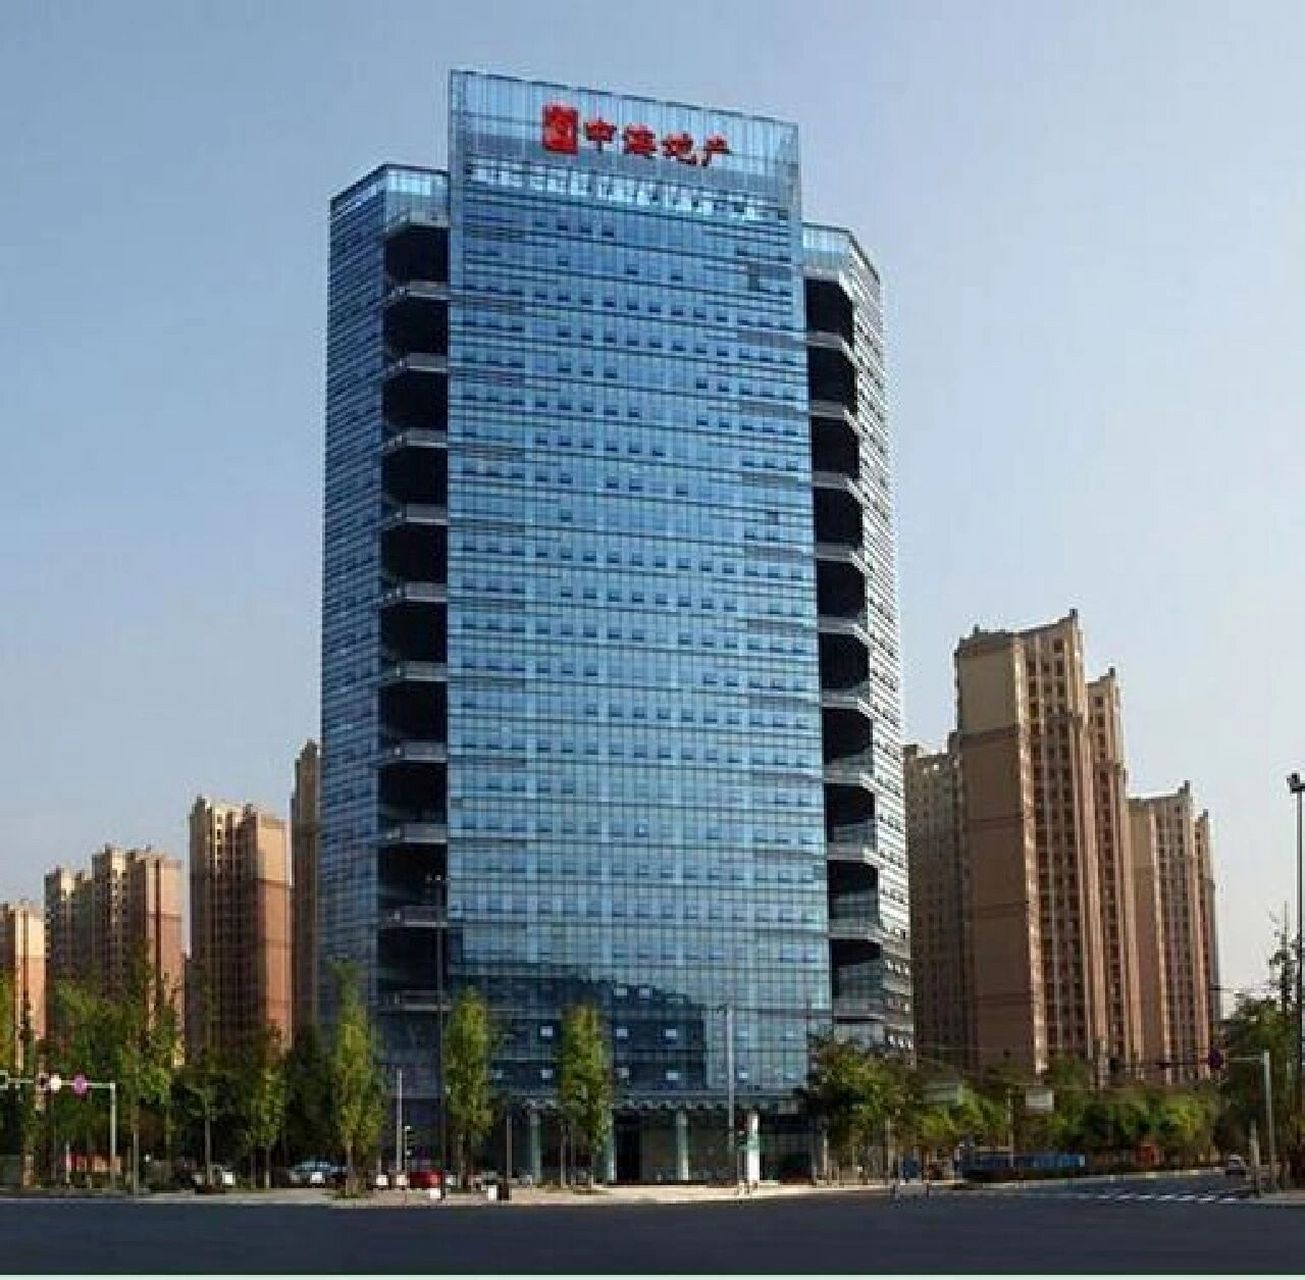 1中海地产 一 中海地产 中海企业发展集团有限公司,隶属于中国建筑